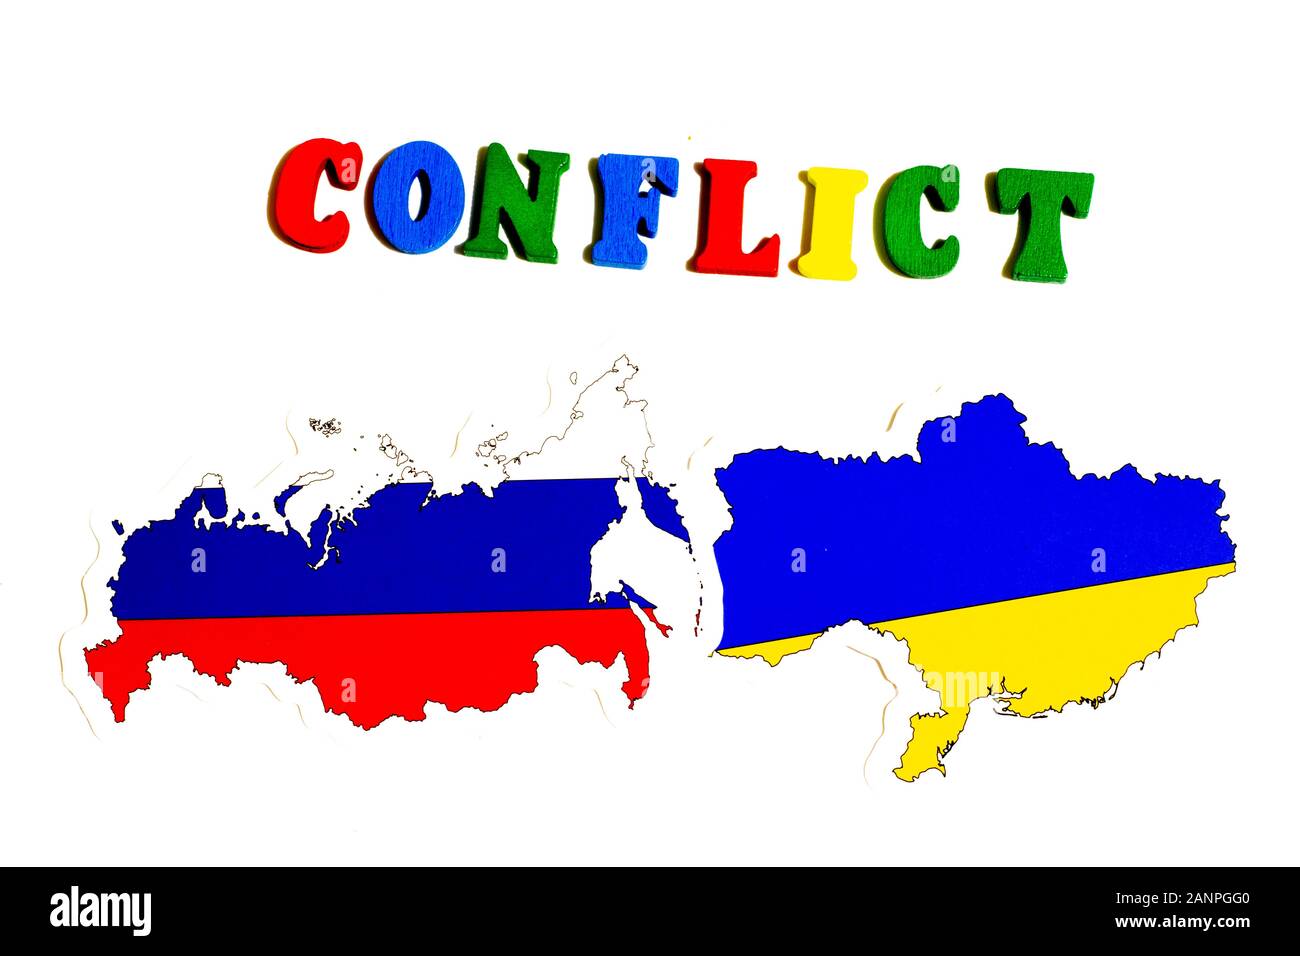 Los Angeles, Kalifornien, USA - 17. Januar 2020: Konfliktkonzept Russland und Ukraine. Russisch-Ukrainischer Krieg, Illustrations-Editorial Stockfoto